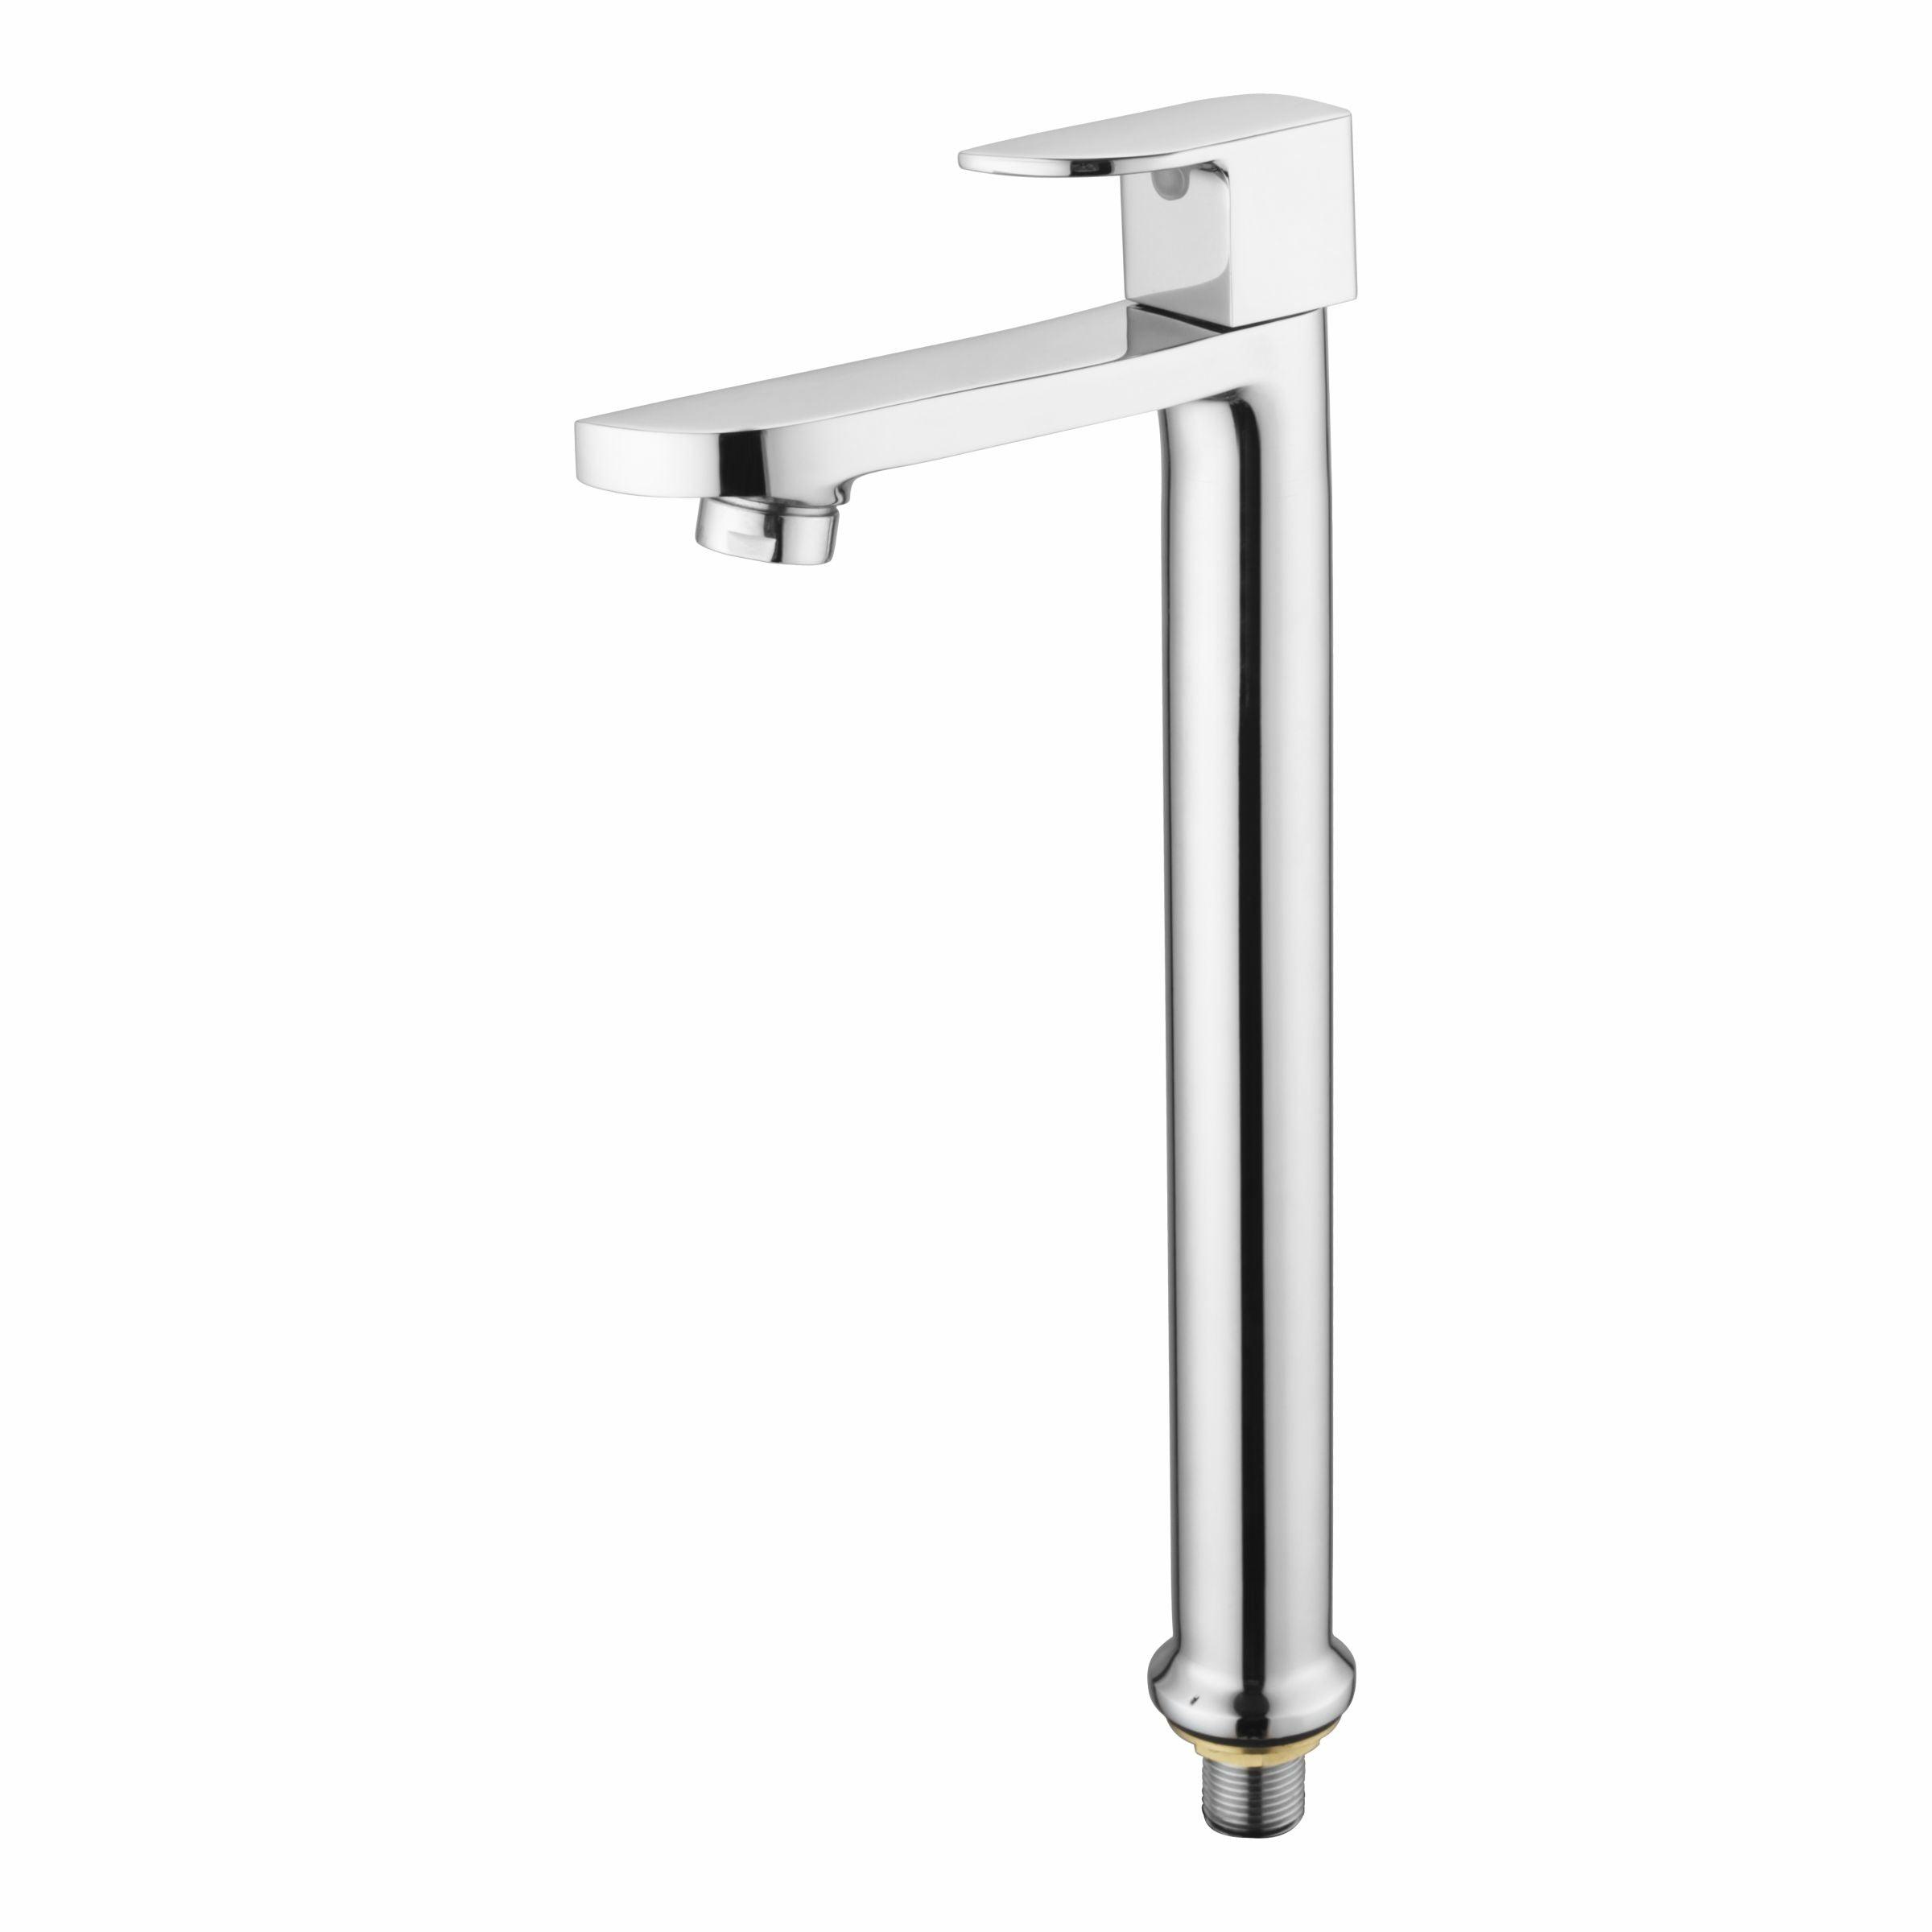 Arise Pillar Tap Tall Body Brass Faucet- LIPKA - Lipka Home